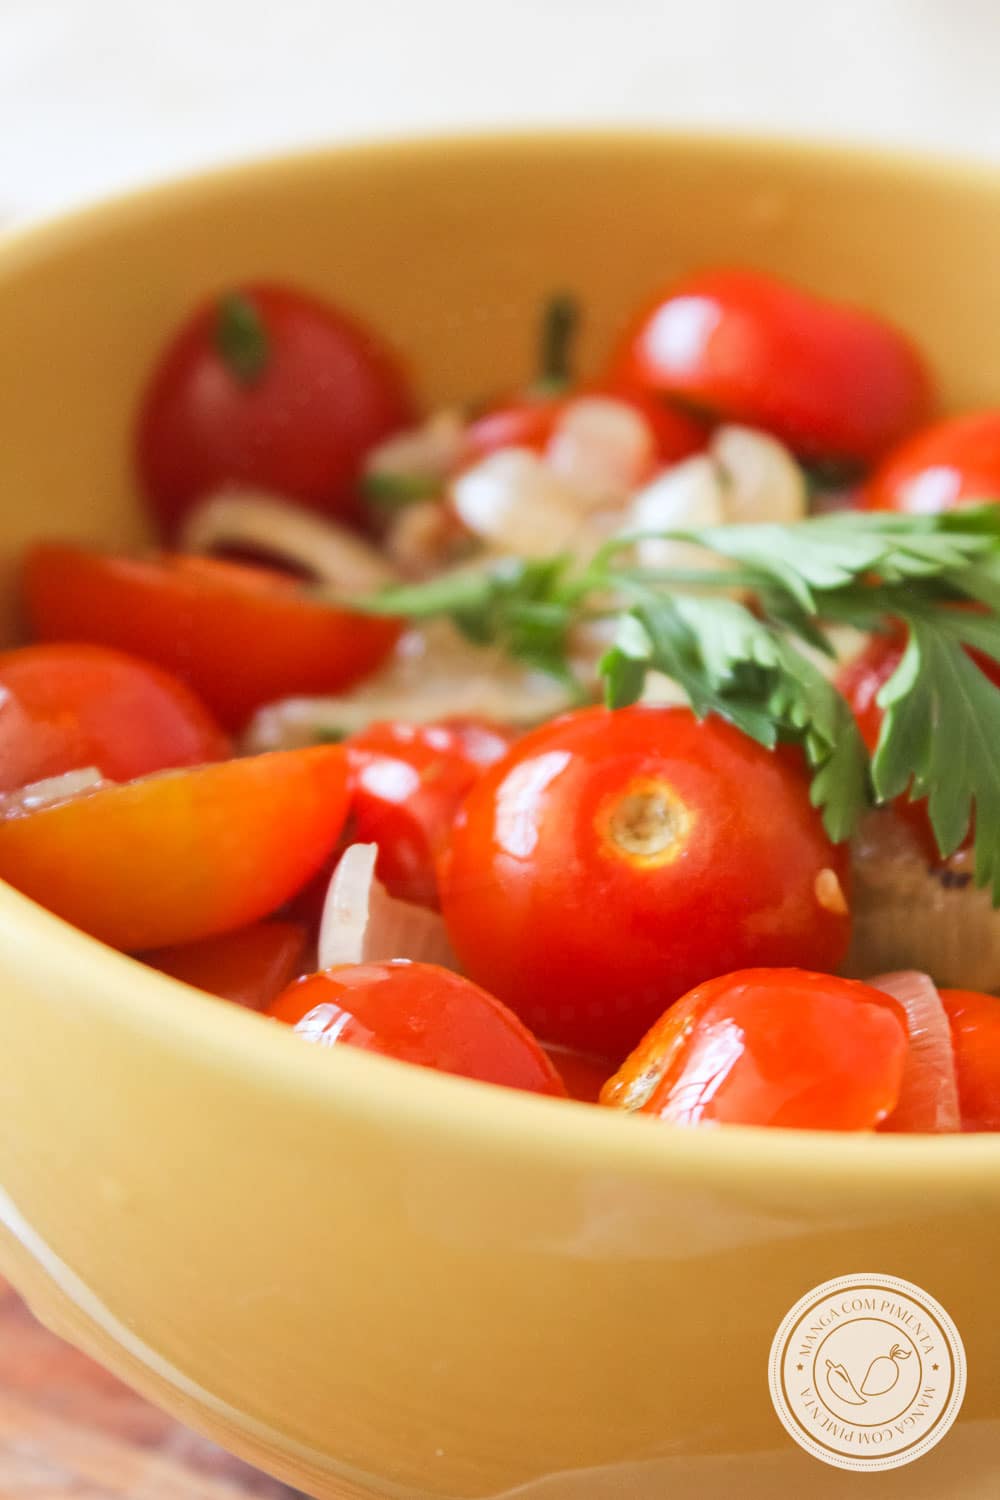 Receita de Salada de Tomate Cereja à Provençal - prepare esse prato simples e delicioso para as Festas de Final de Ano!